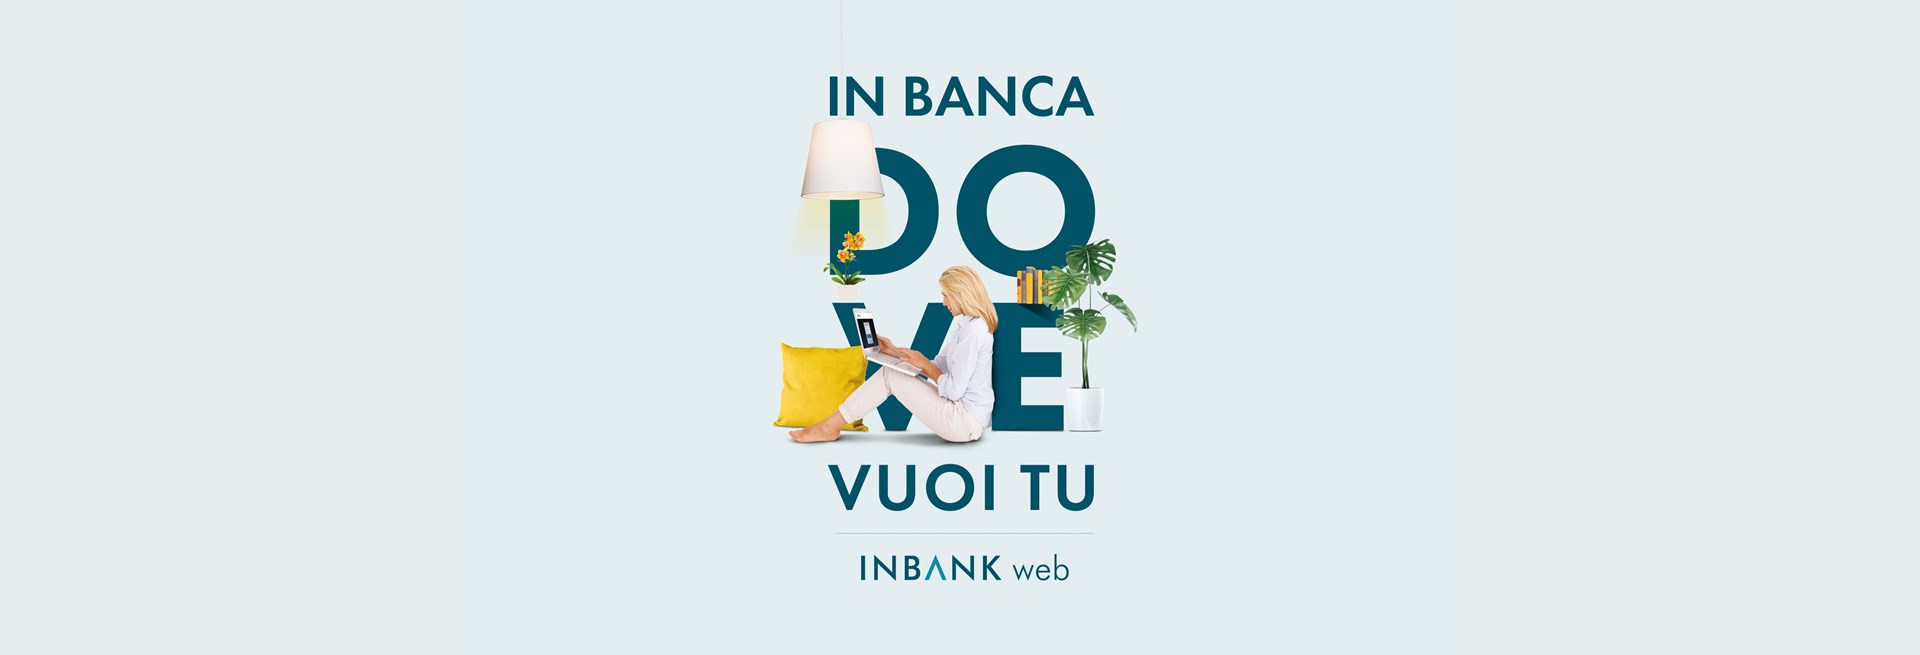 inbank web.jpg